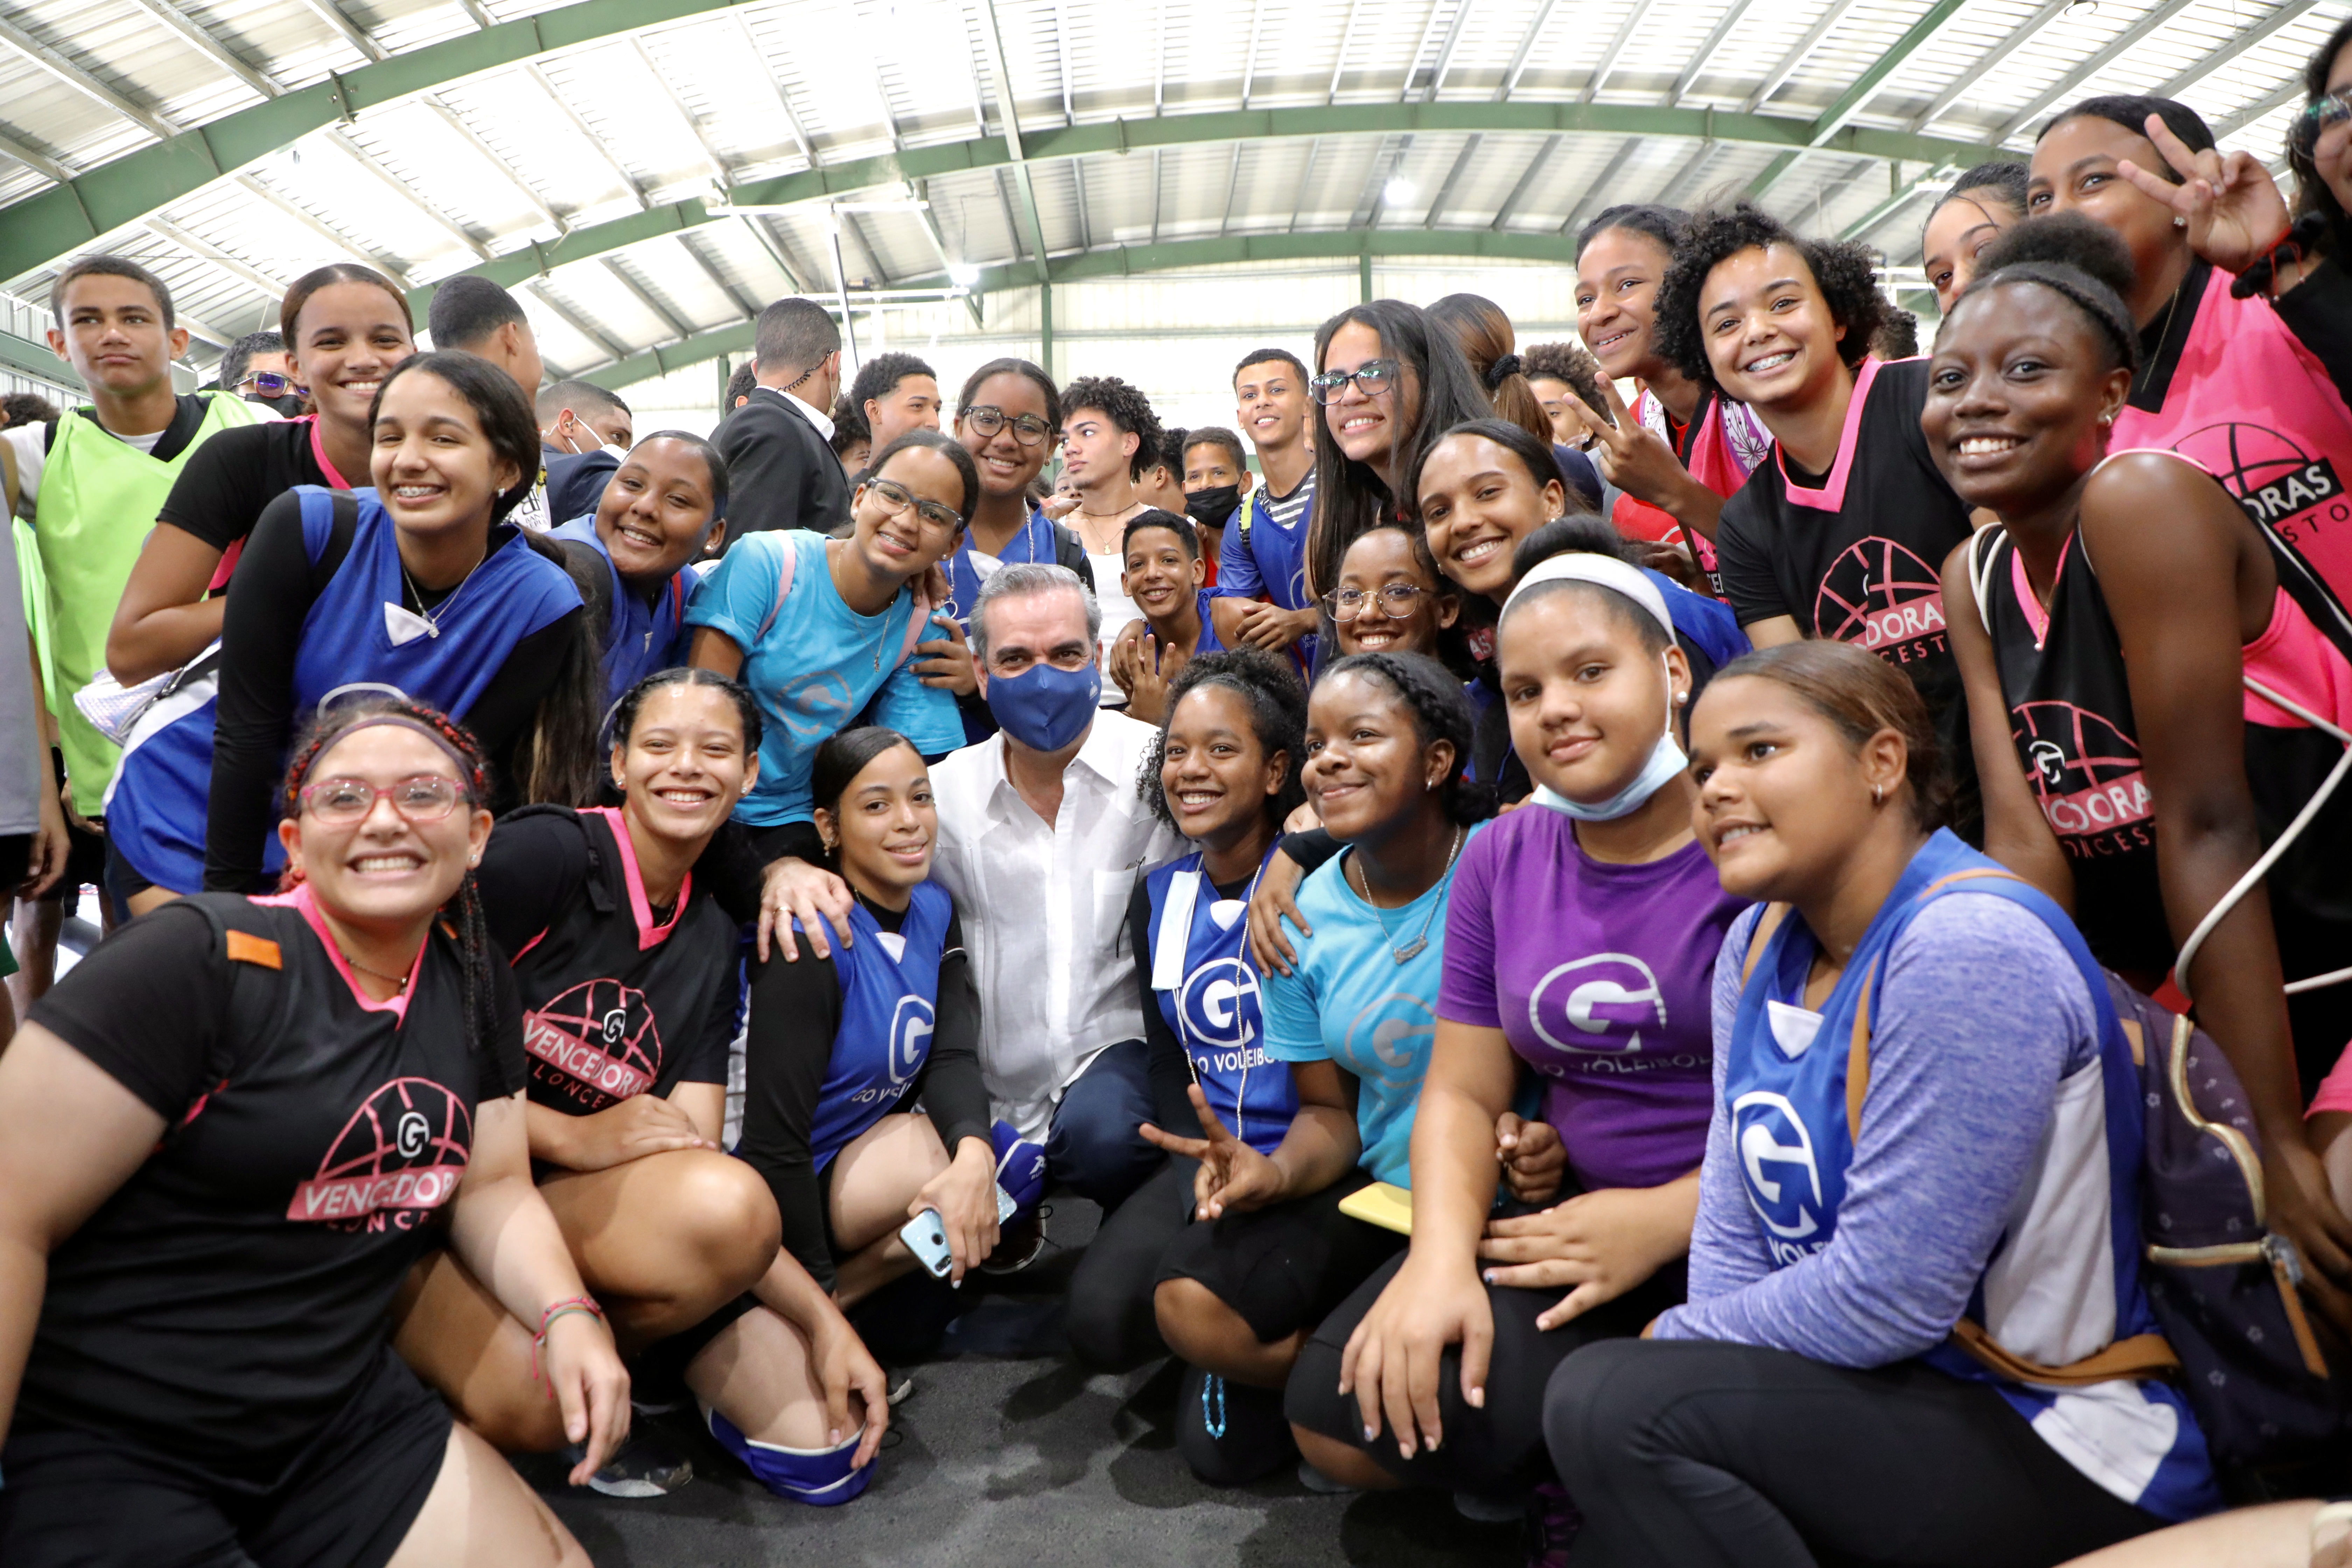 REPÚBLICA DOMINICANA: Presidente Abinader respalda deporte y juventud en Santiago